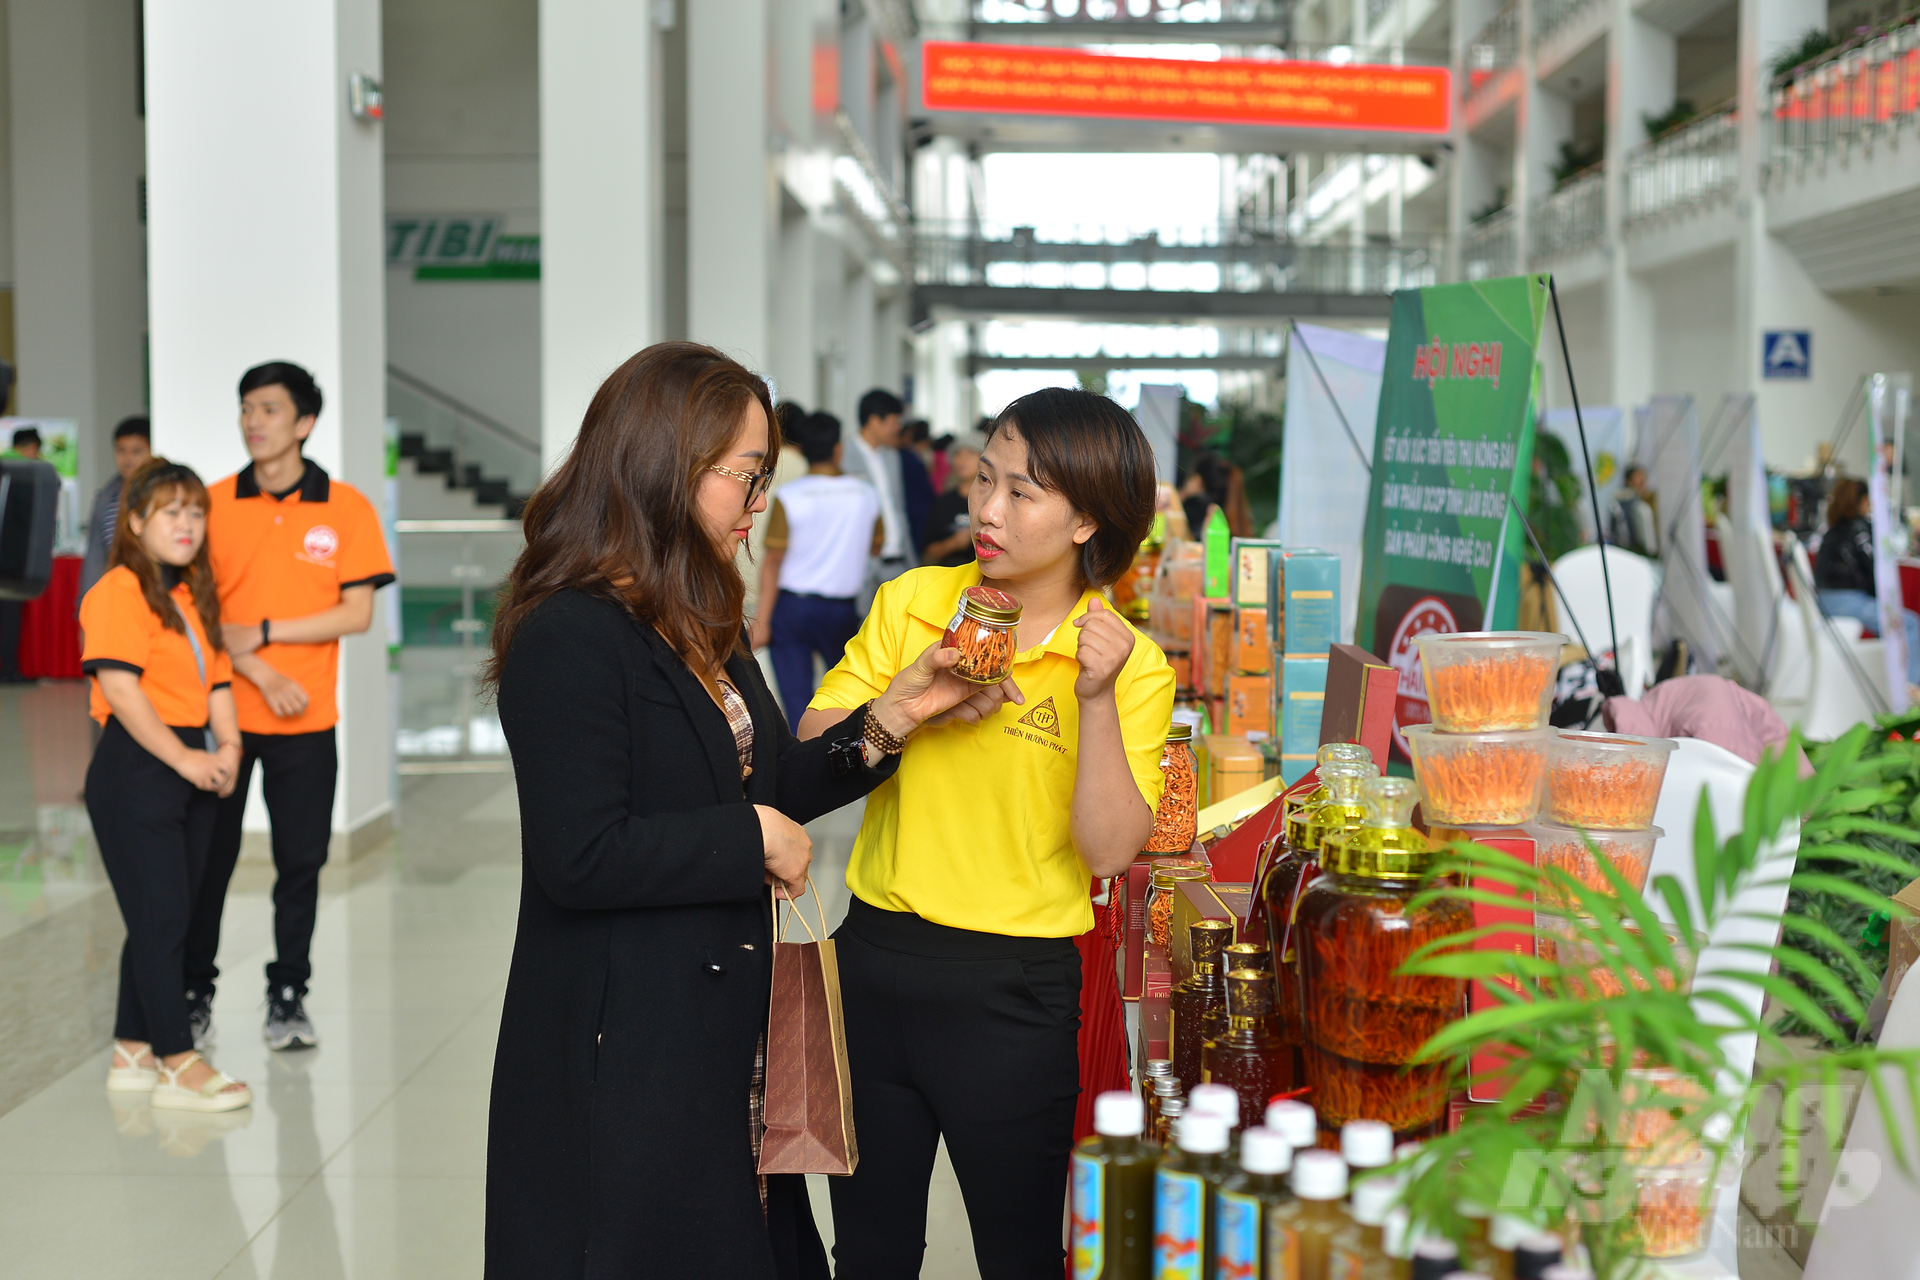 Hội nghị tổ chức 40 gian trưng bày các sản phẩm OCOP, sản phẩm nông thôn tiêu biểu, đặc trưng của tỉnh Lâm Đồng. Ảnh: Minh Hậu.